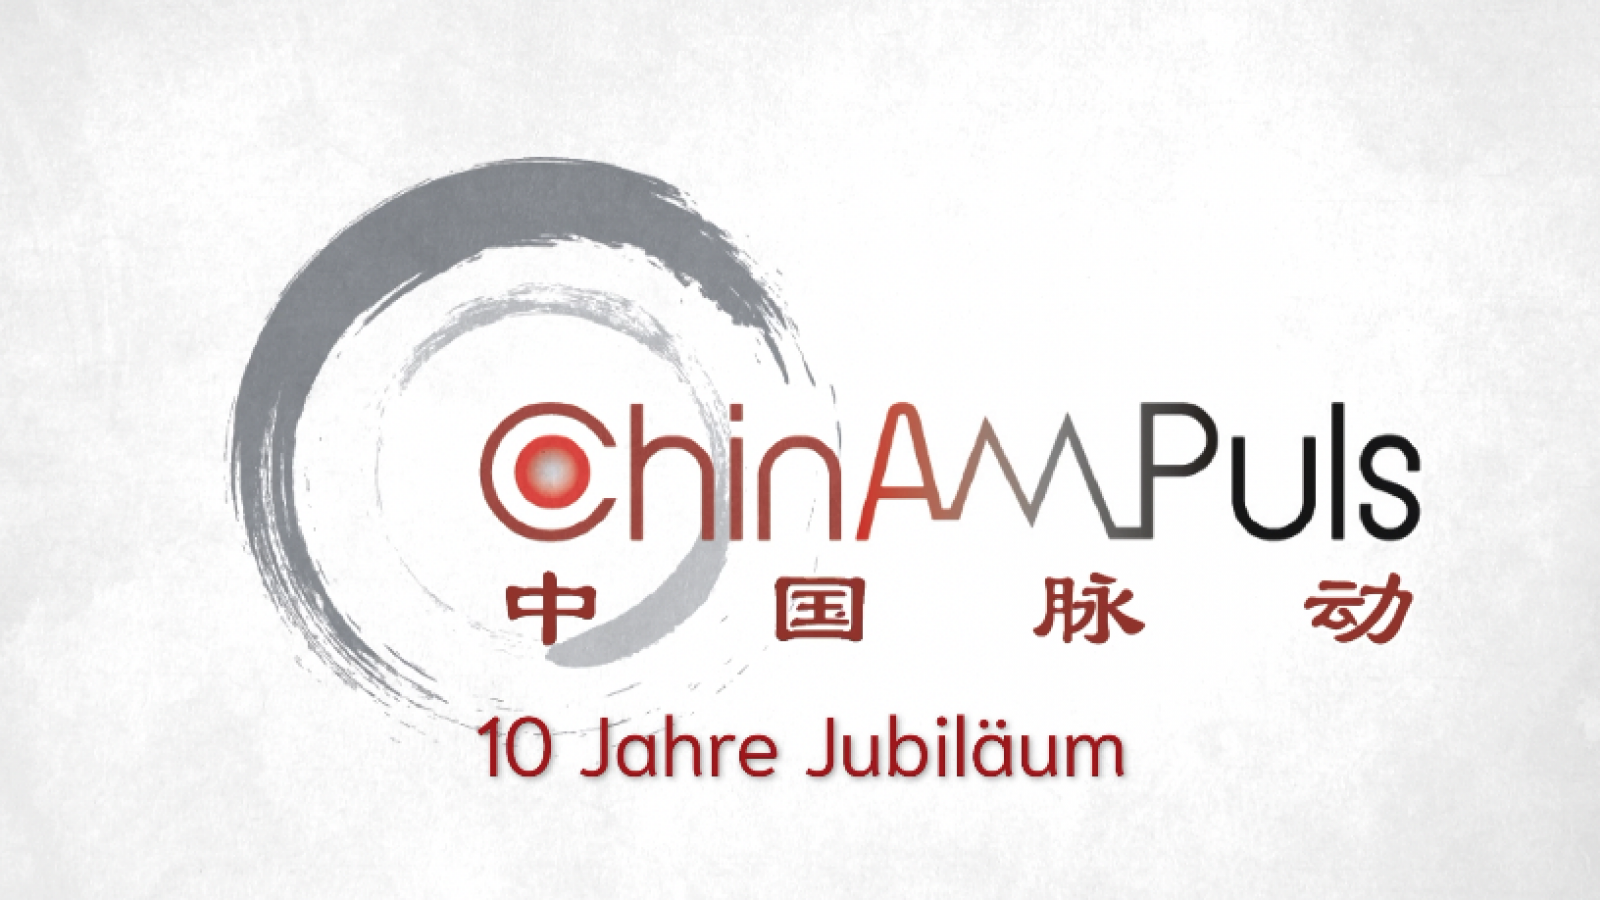 10 Jahre China am Puls